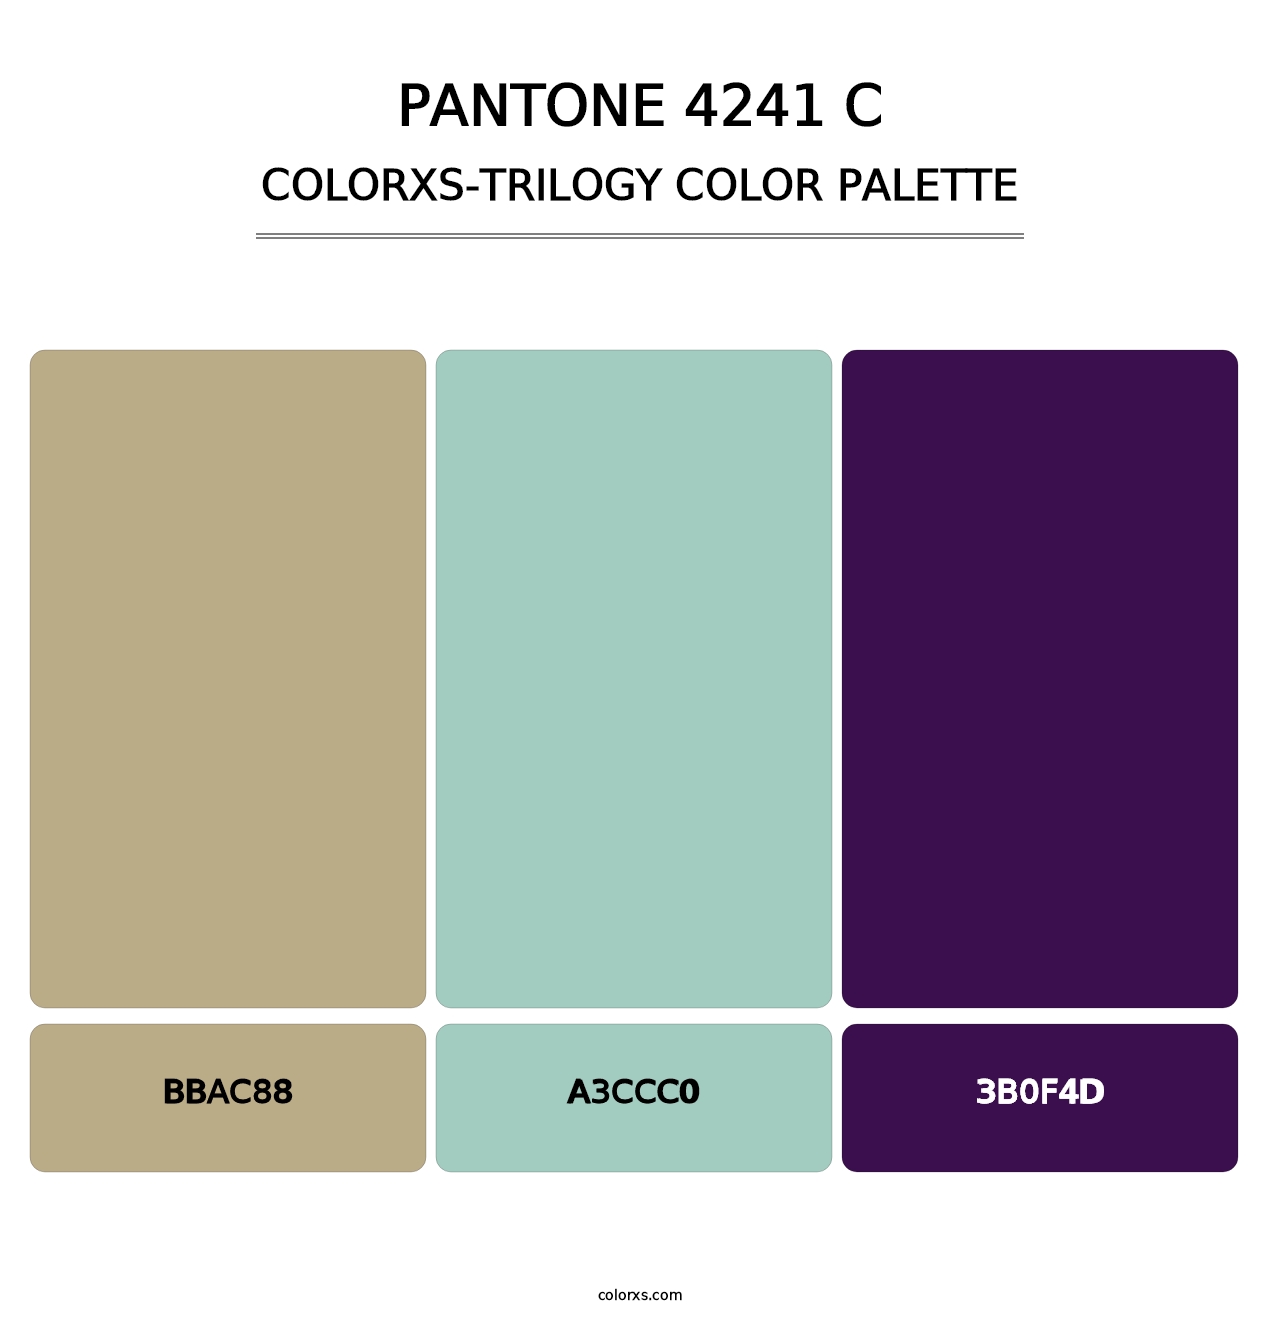 PANTONE 4241 C - Colorxs Trilogy Palette